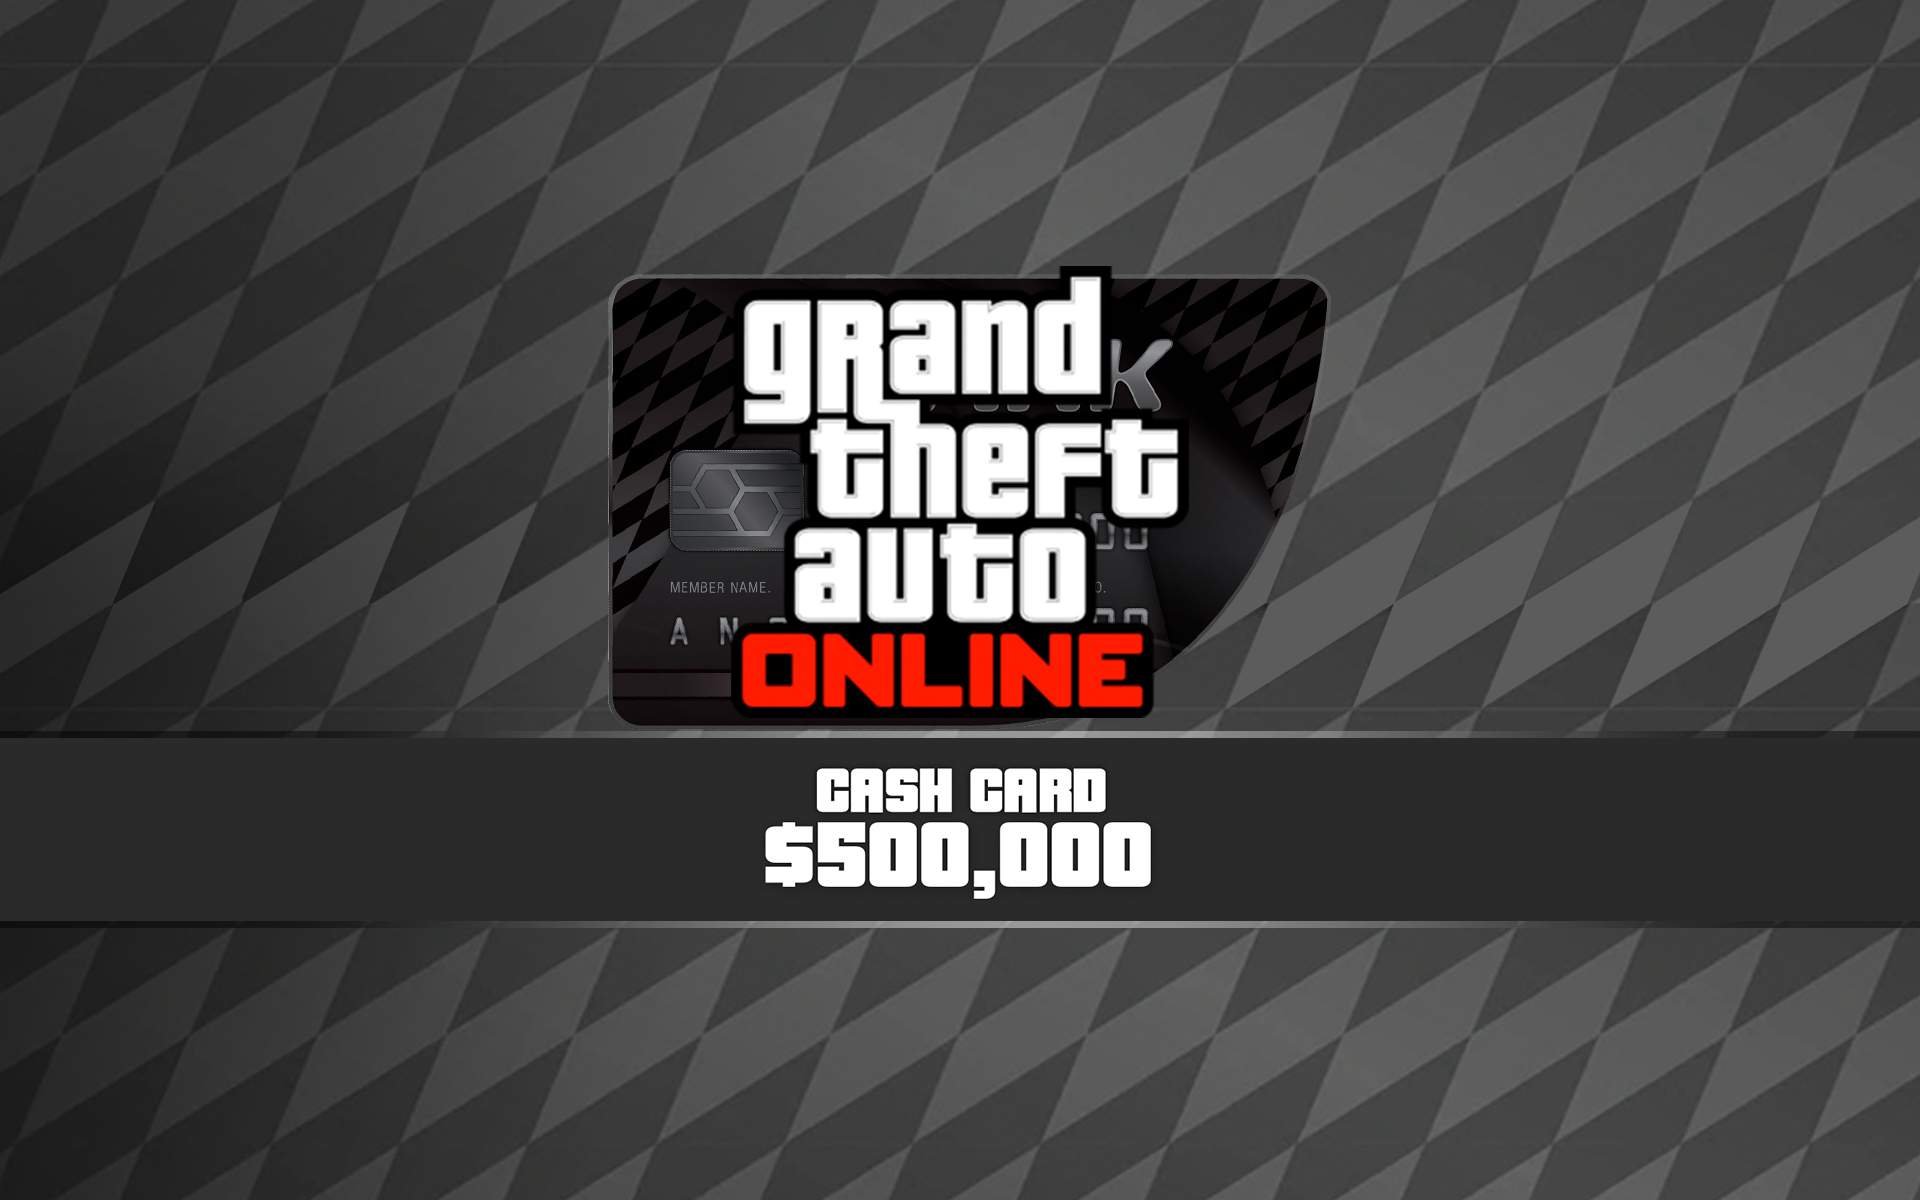 Grand Theft Auto V: Bull Shark Cash Card - Xbox One